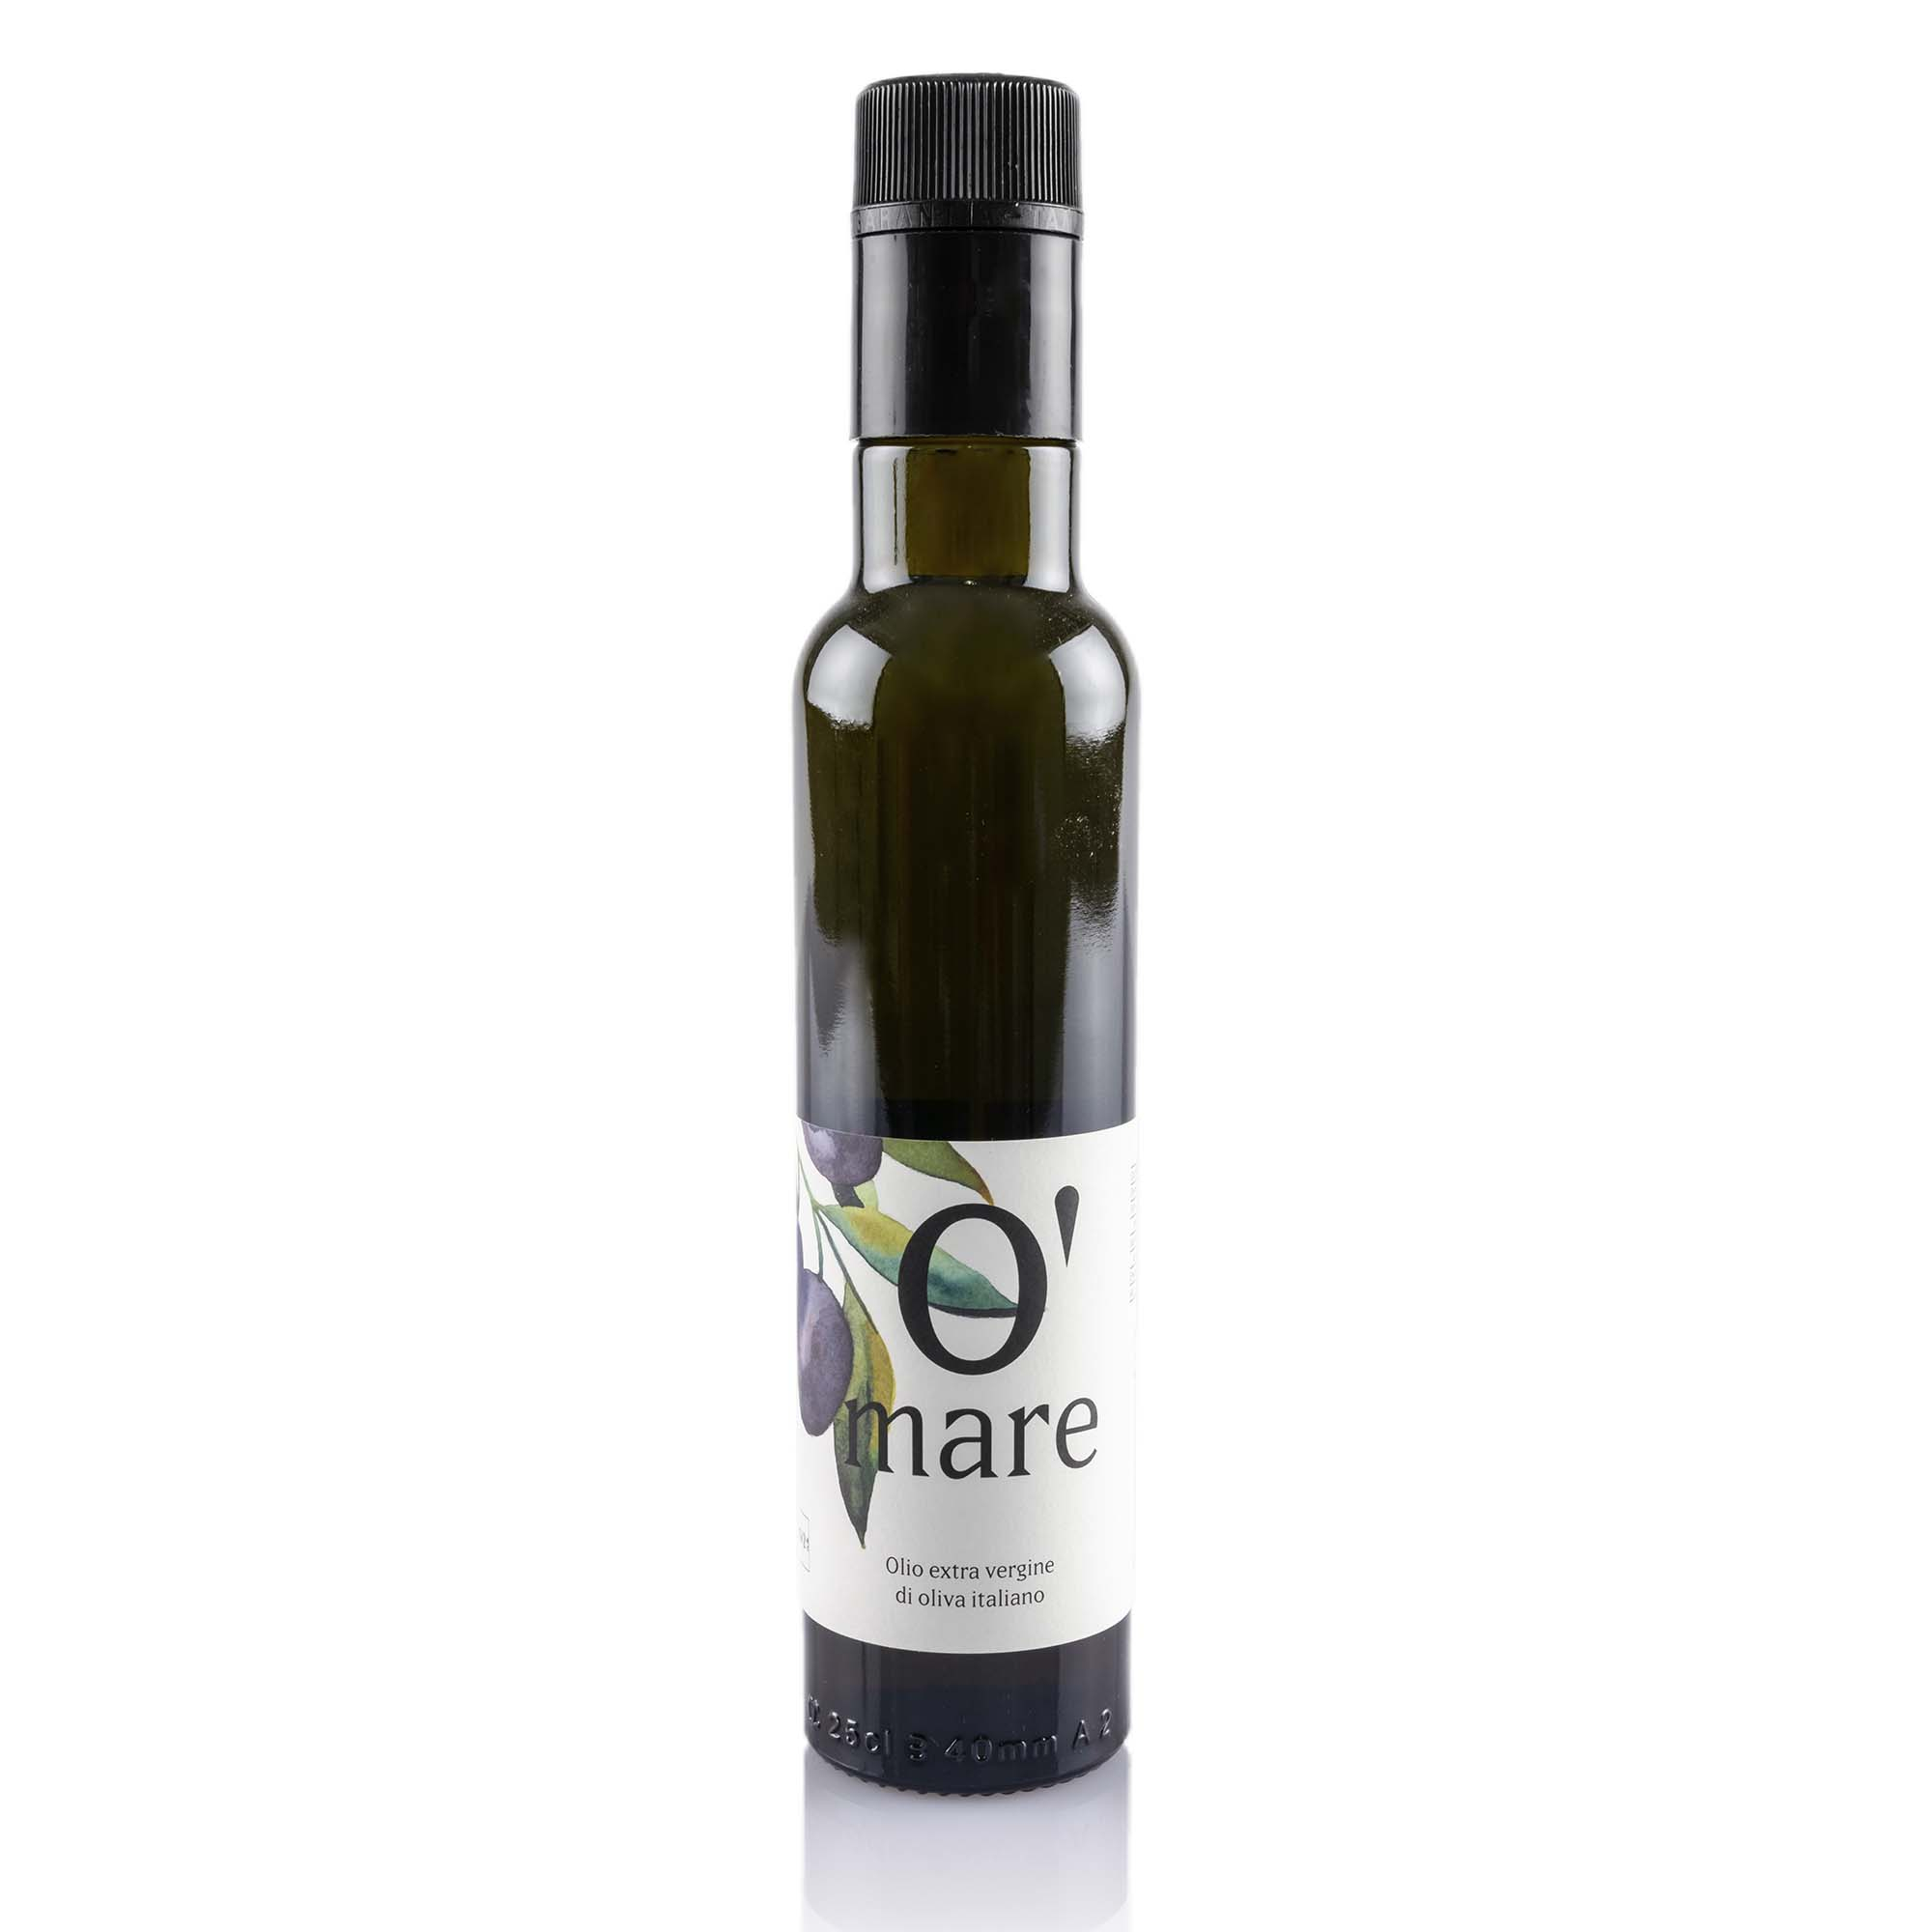 Olivenöl o'mare, 25cl